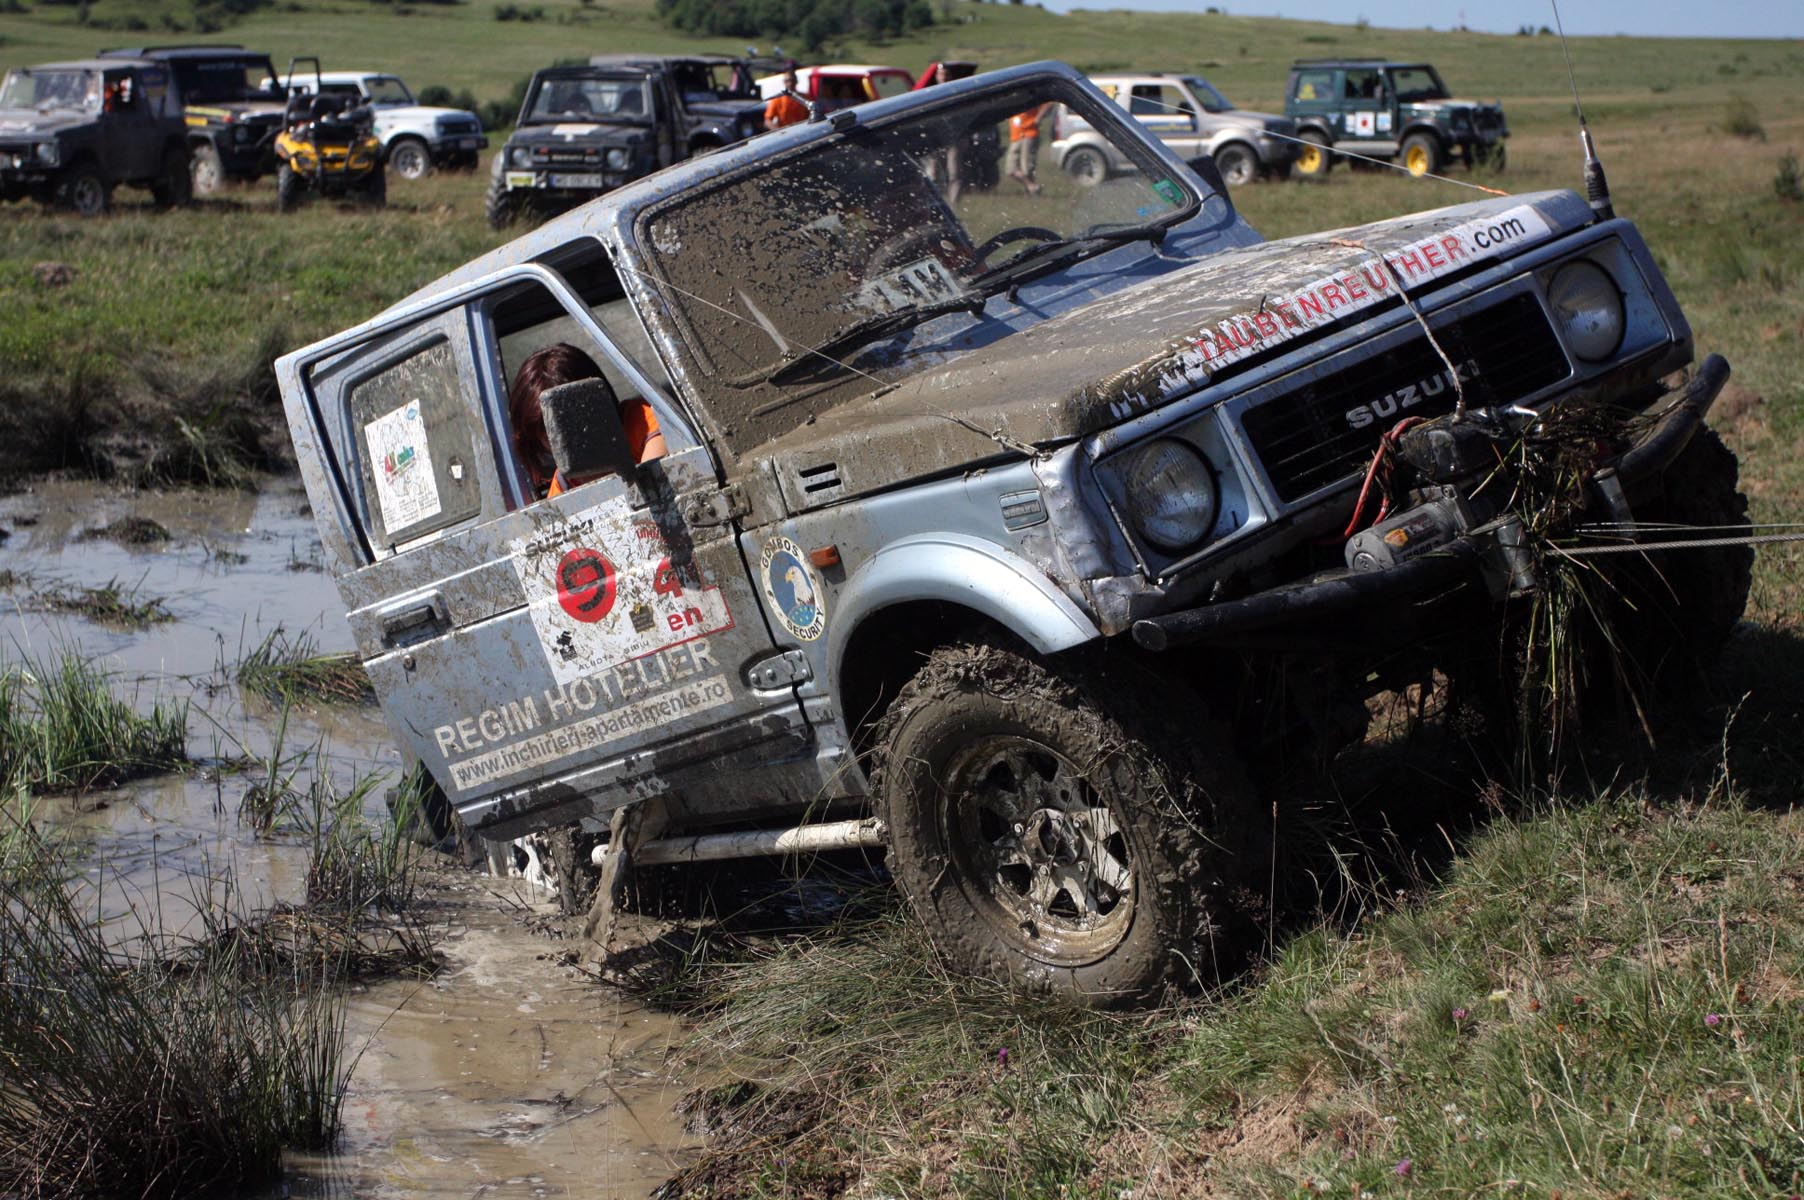 Suzuki loves mud!